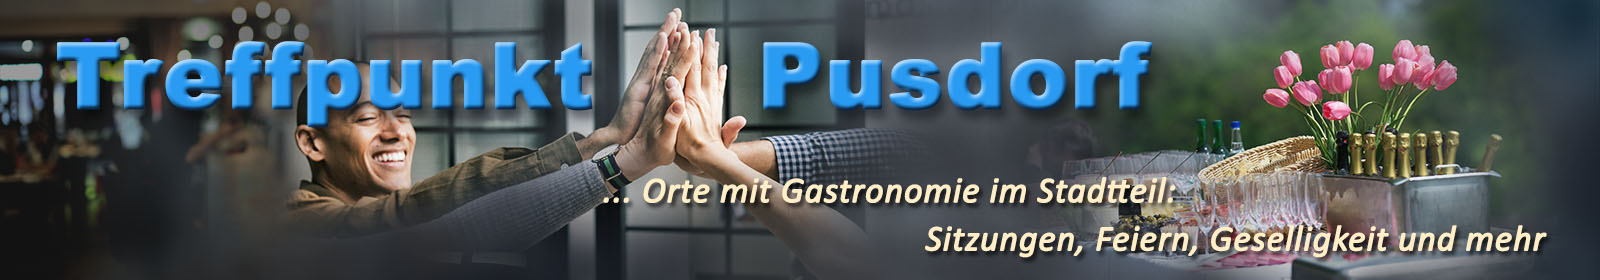 pusdorf.info - Treffpunkt mit Gastronomie